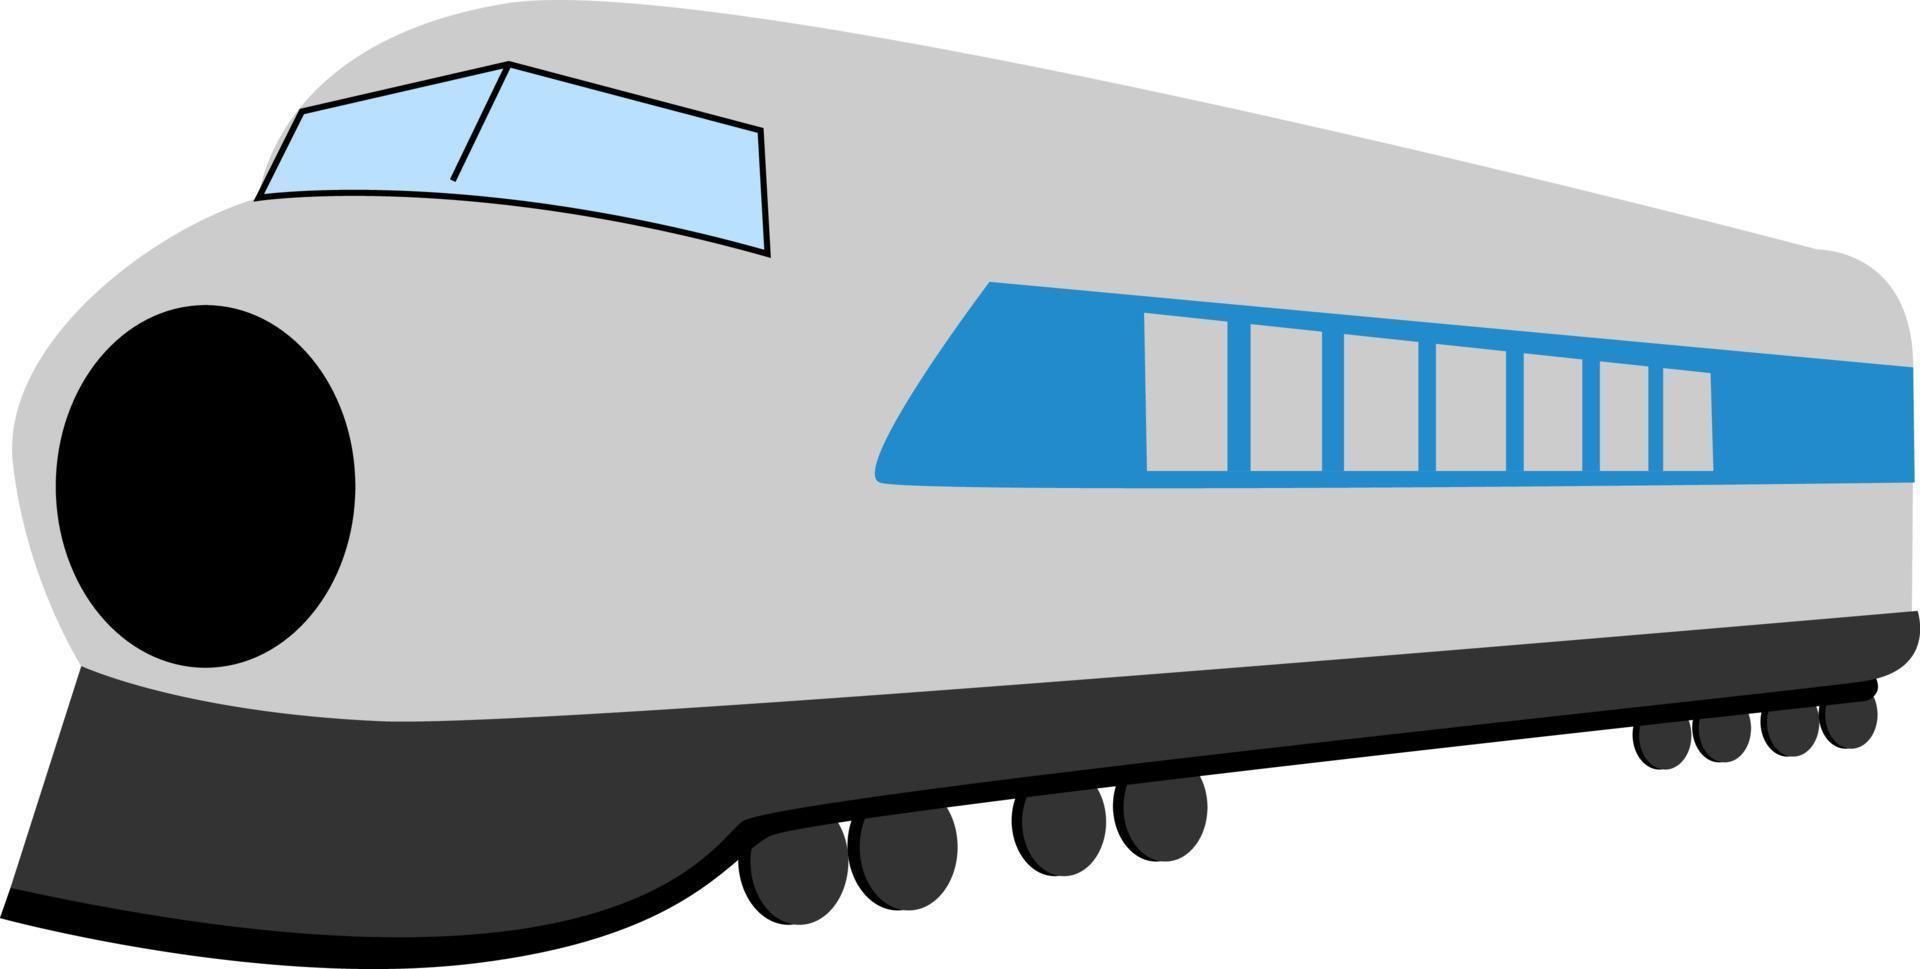 vagón de tren, ilustración, vector sobre fondo blanco.